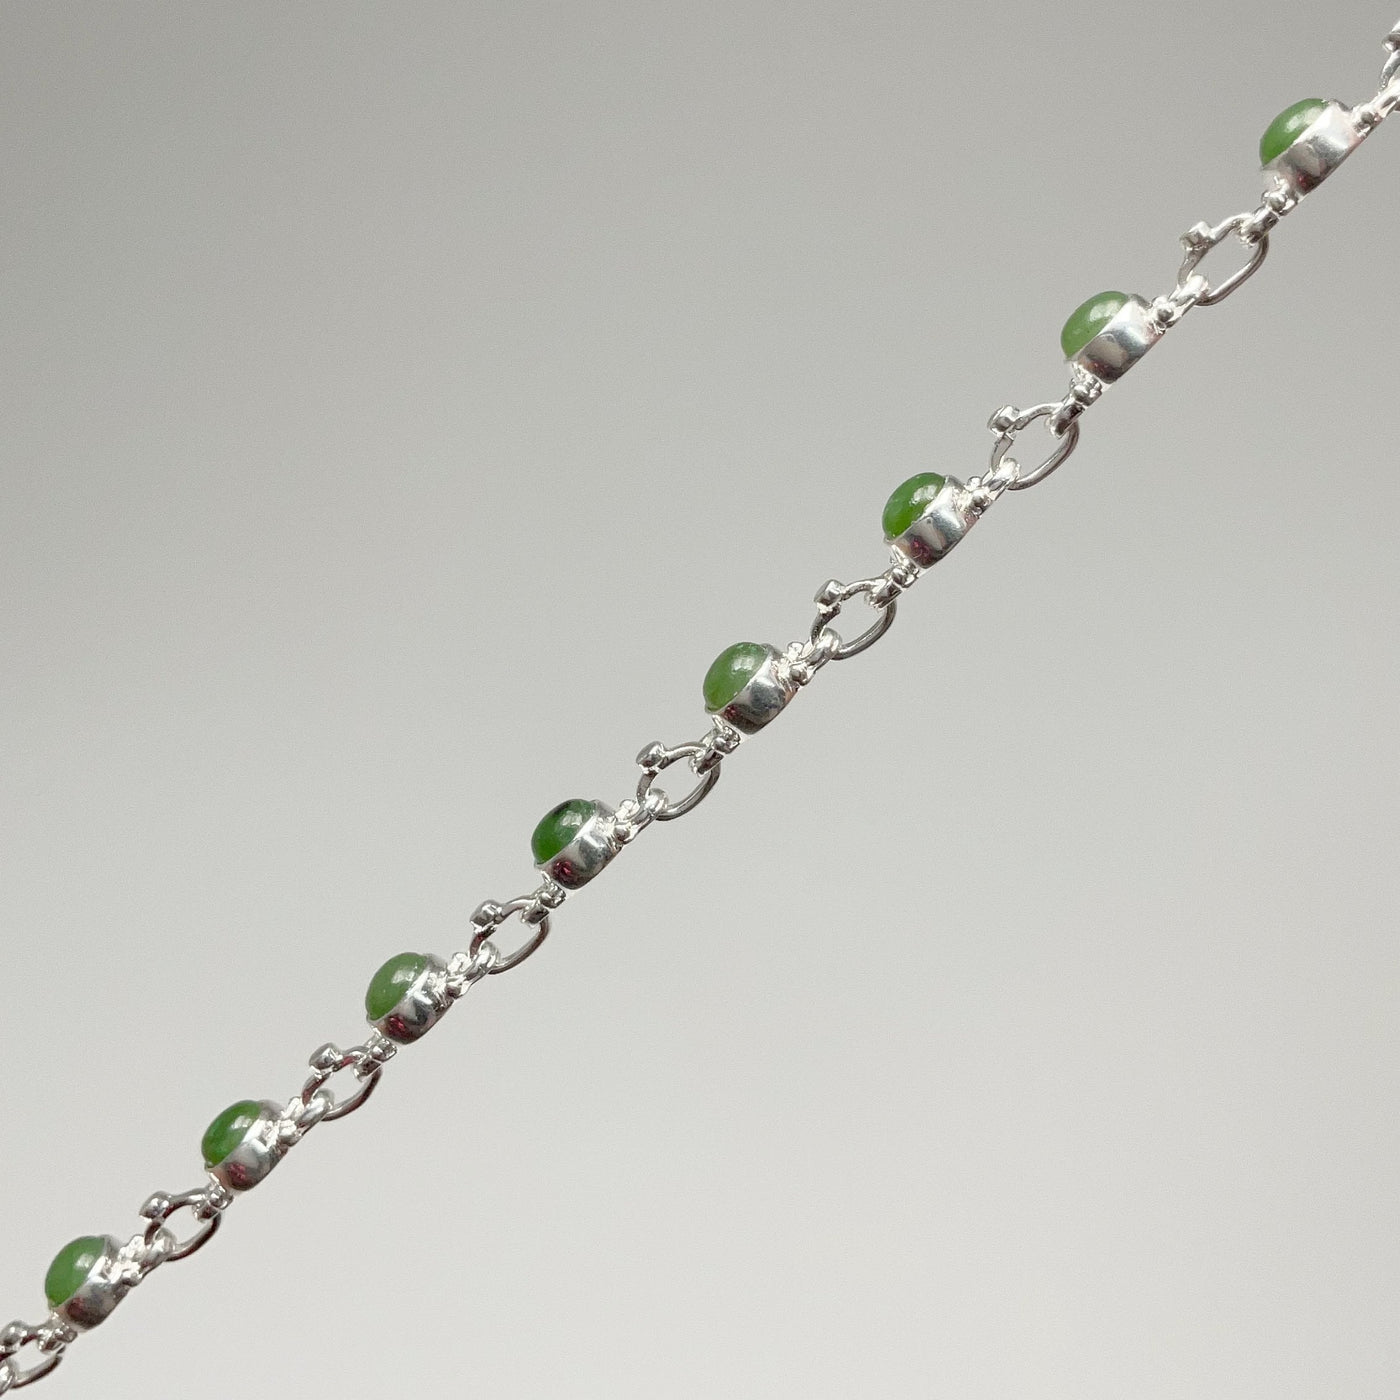 Canadian Jade Sterling Silver Bracelet